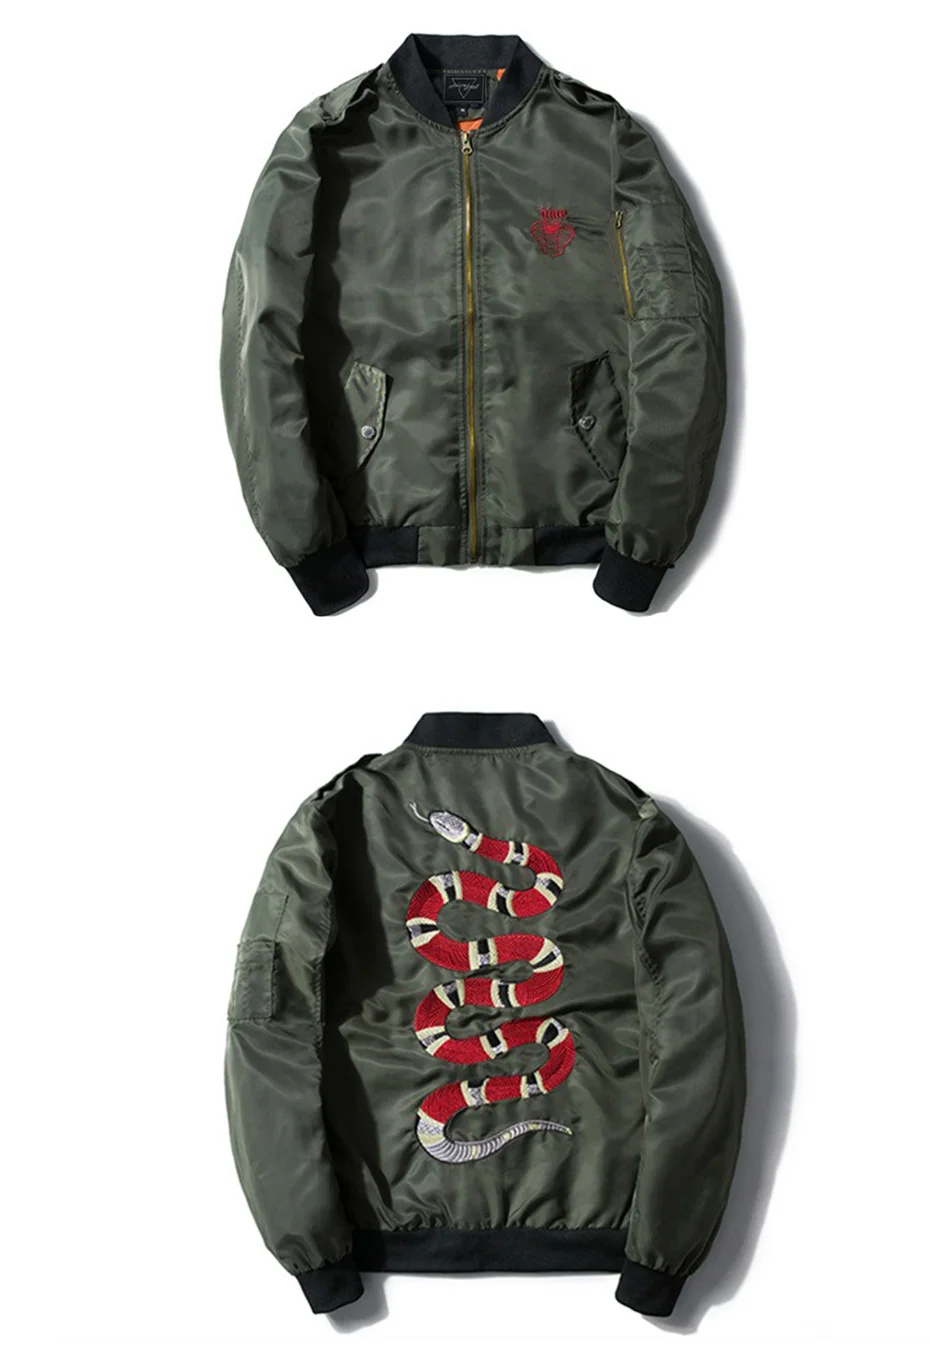 AELFRIC мужские пальто и куртки Вышивка змея Ma1 куртка Бомбер тонкая женская мужская хип-хоп мода уличная одежда размер США Xs-XL TR05